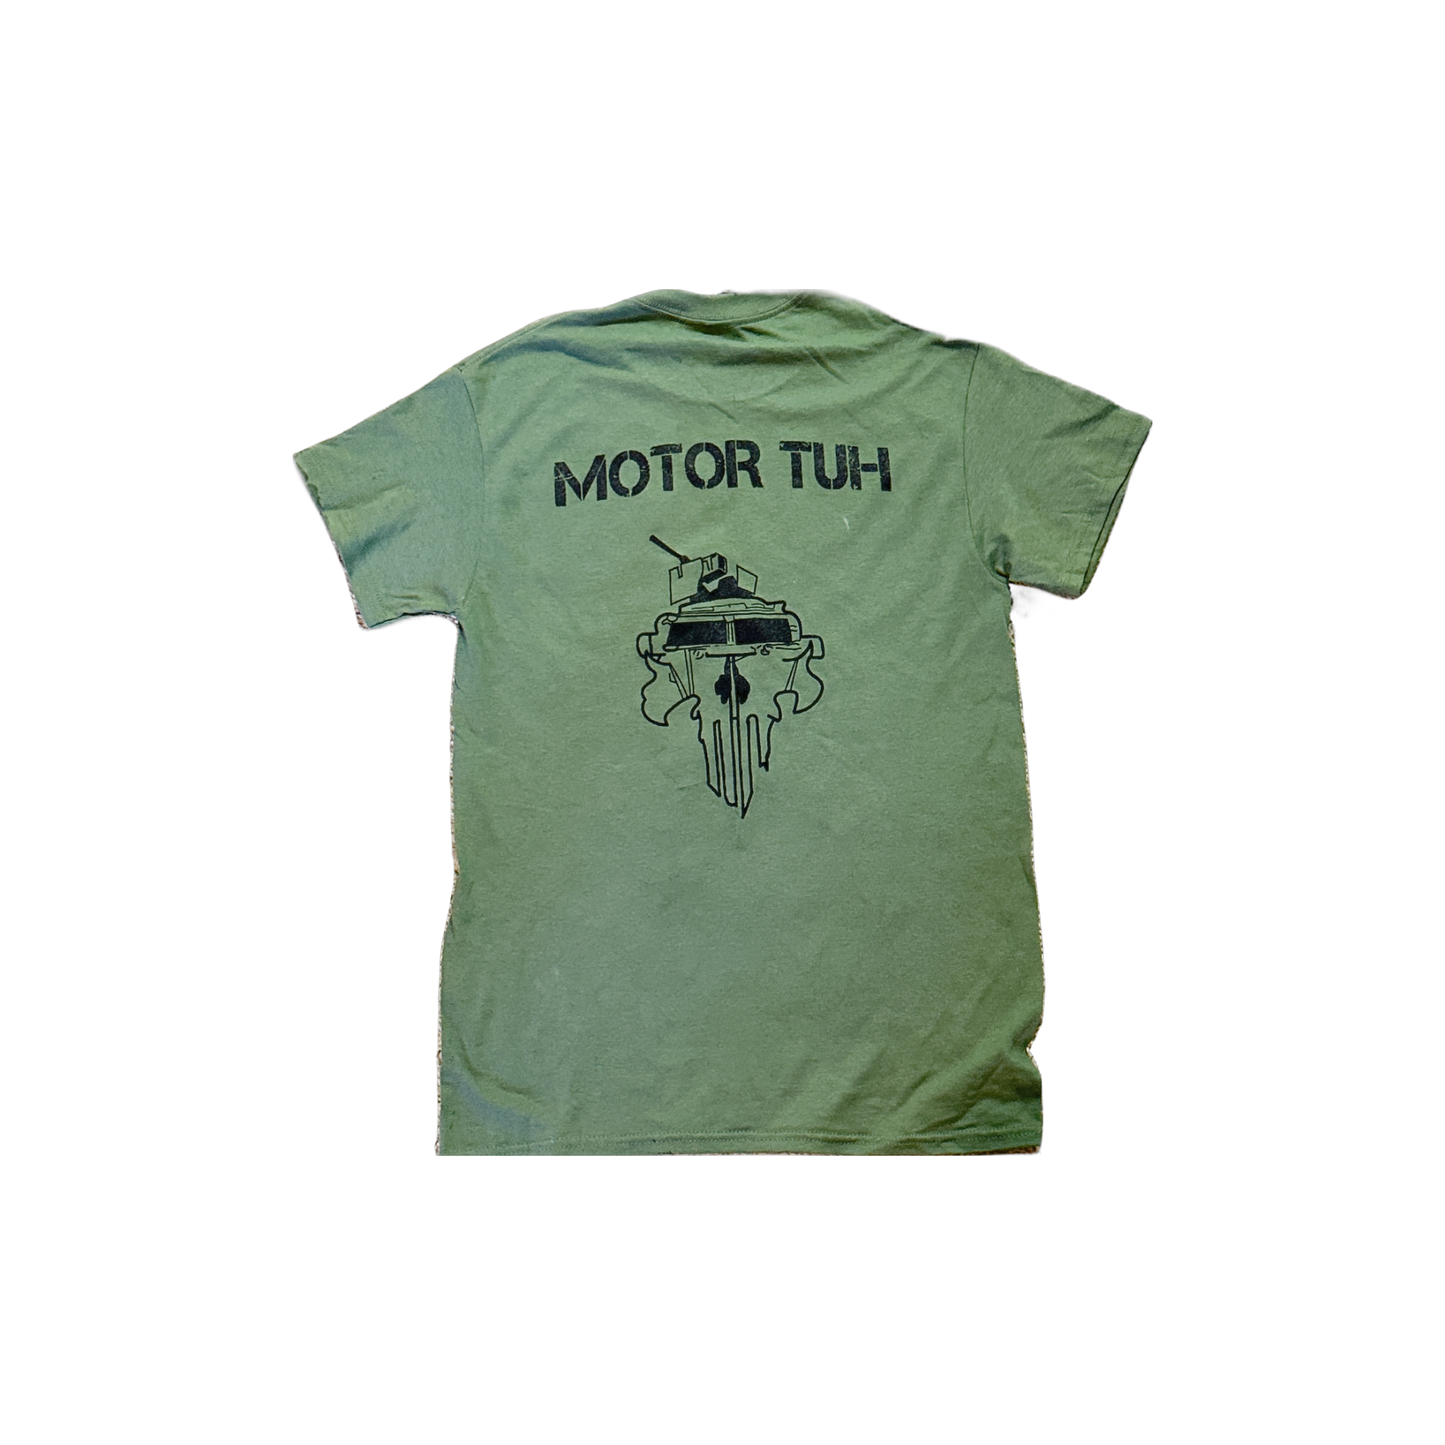 Drop Blouse "Motor Tuh" Shirt Design